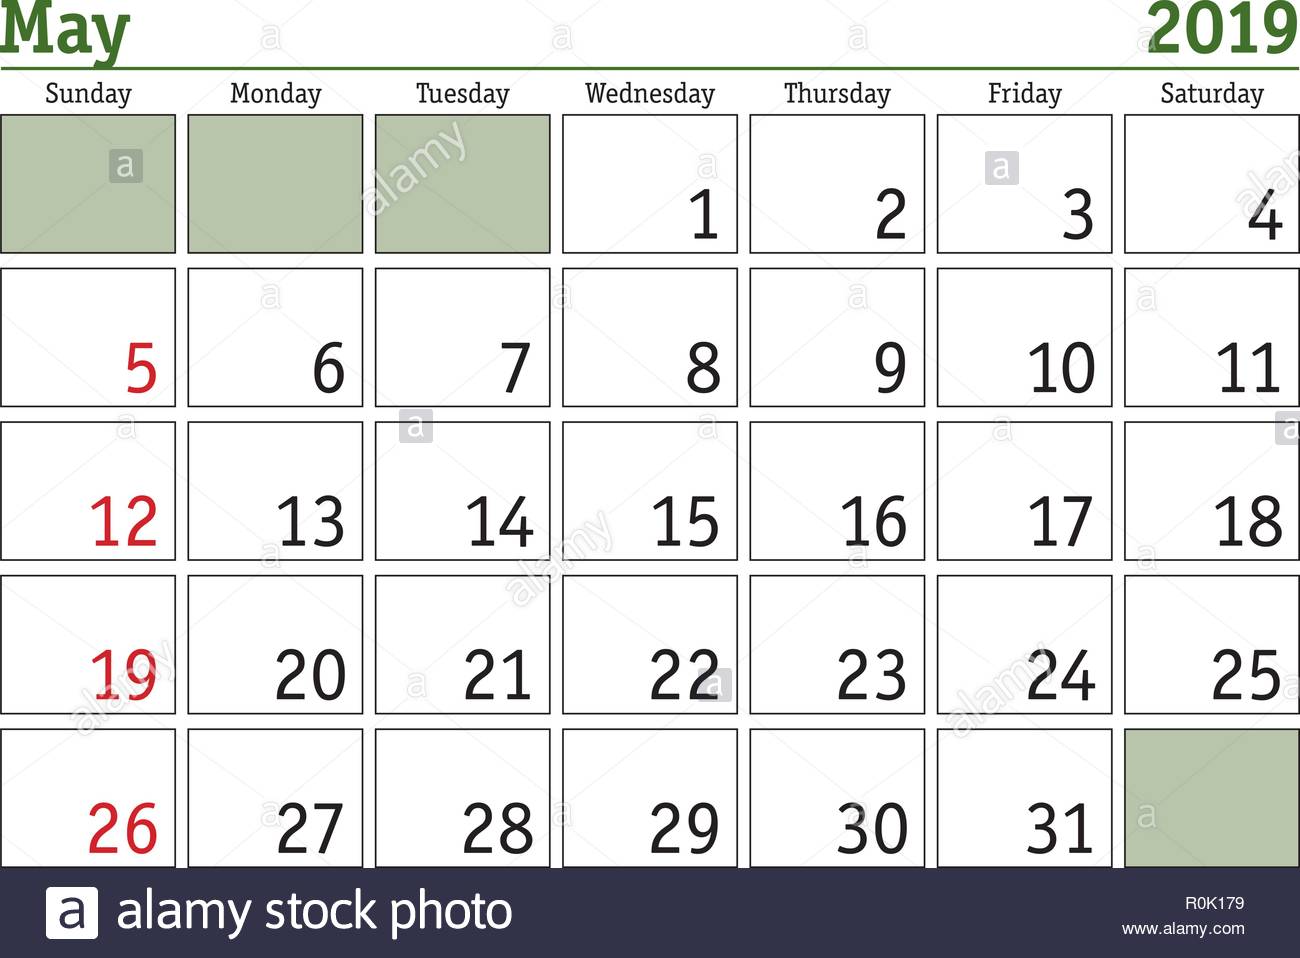 Semplice Digitale Calendario Per Il Mese Di Maggio 19 Vettore Calendario Stampabile Utilita Di Pianificazione Mensile Settimana Comincia La Domenica Calendario In Inglese Immagine E Vettoriale Alamy